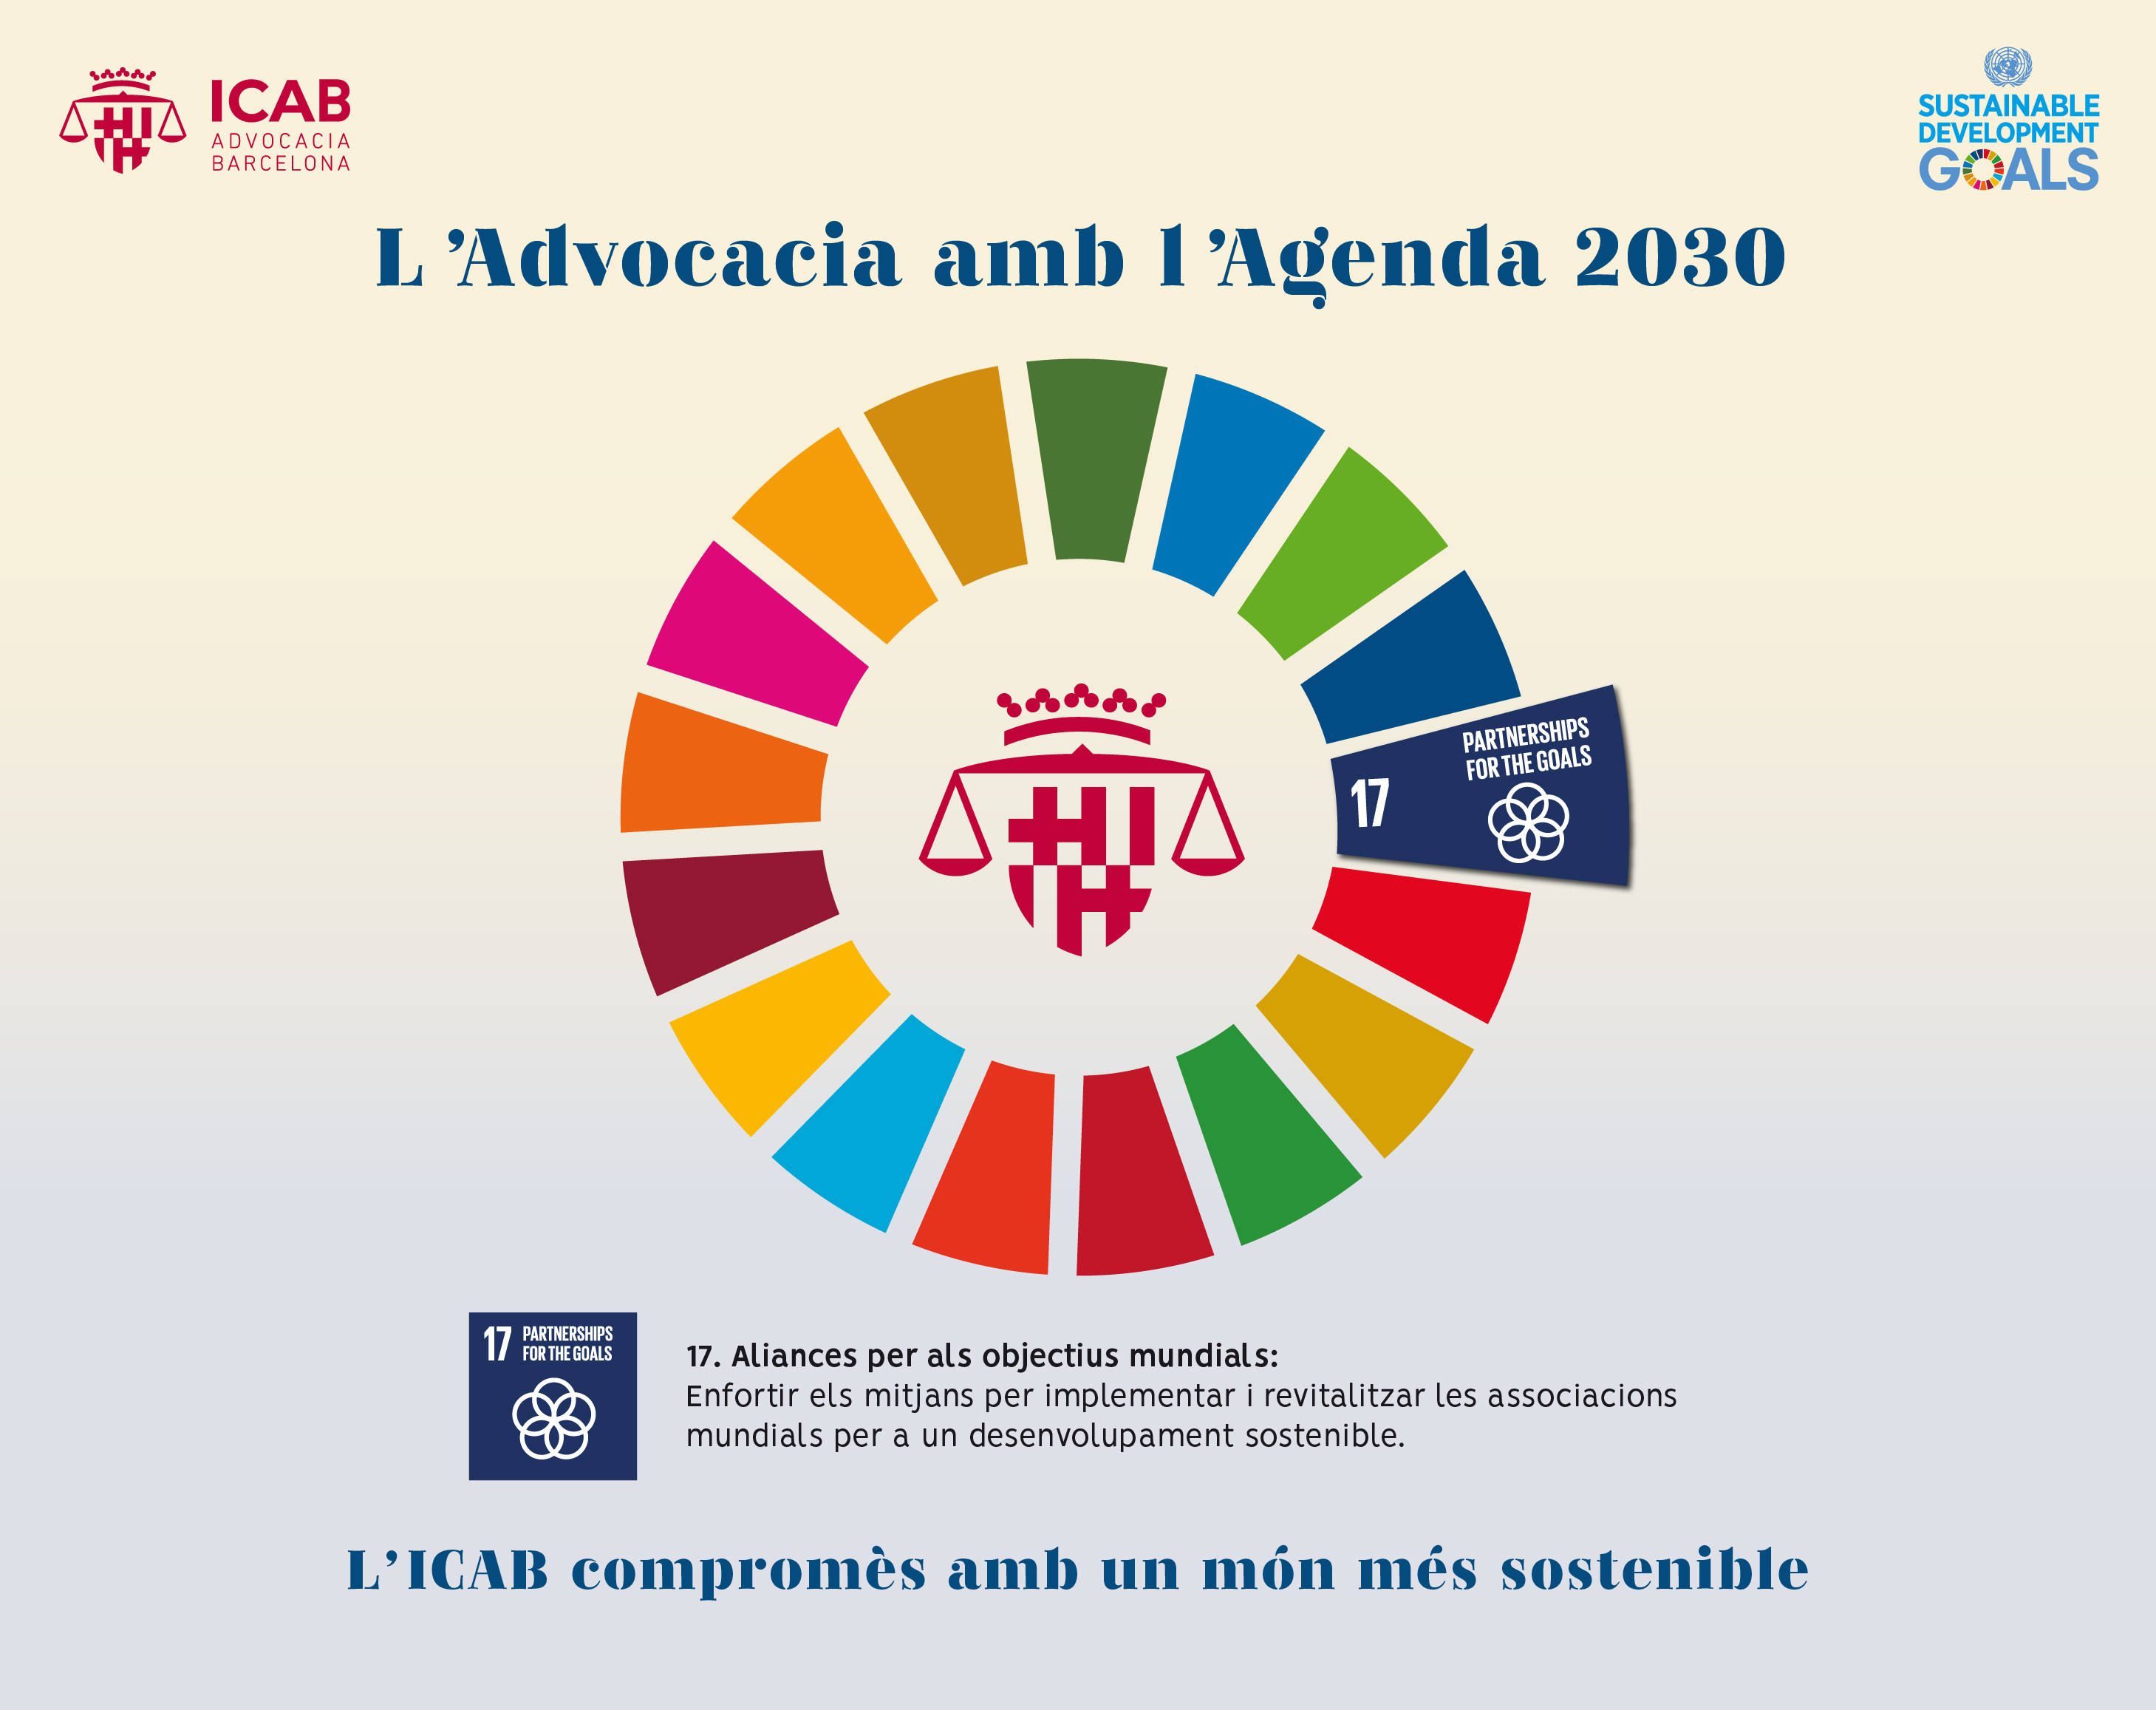 La Abogacía con Agenda 2030: enero 2023 ODS 17 (Alianzas objetivos mundiales)